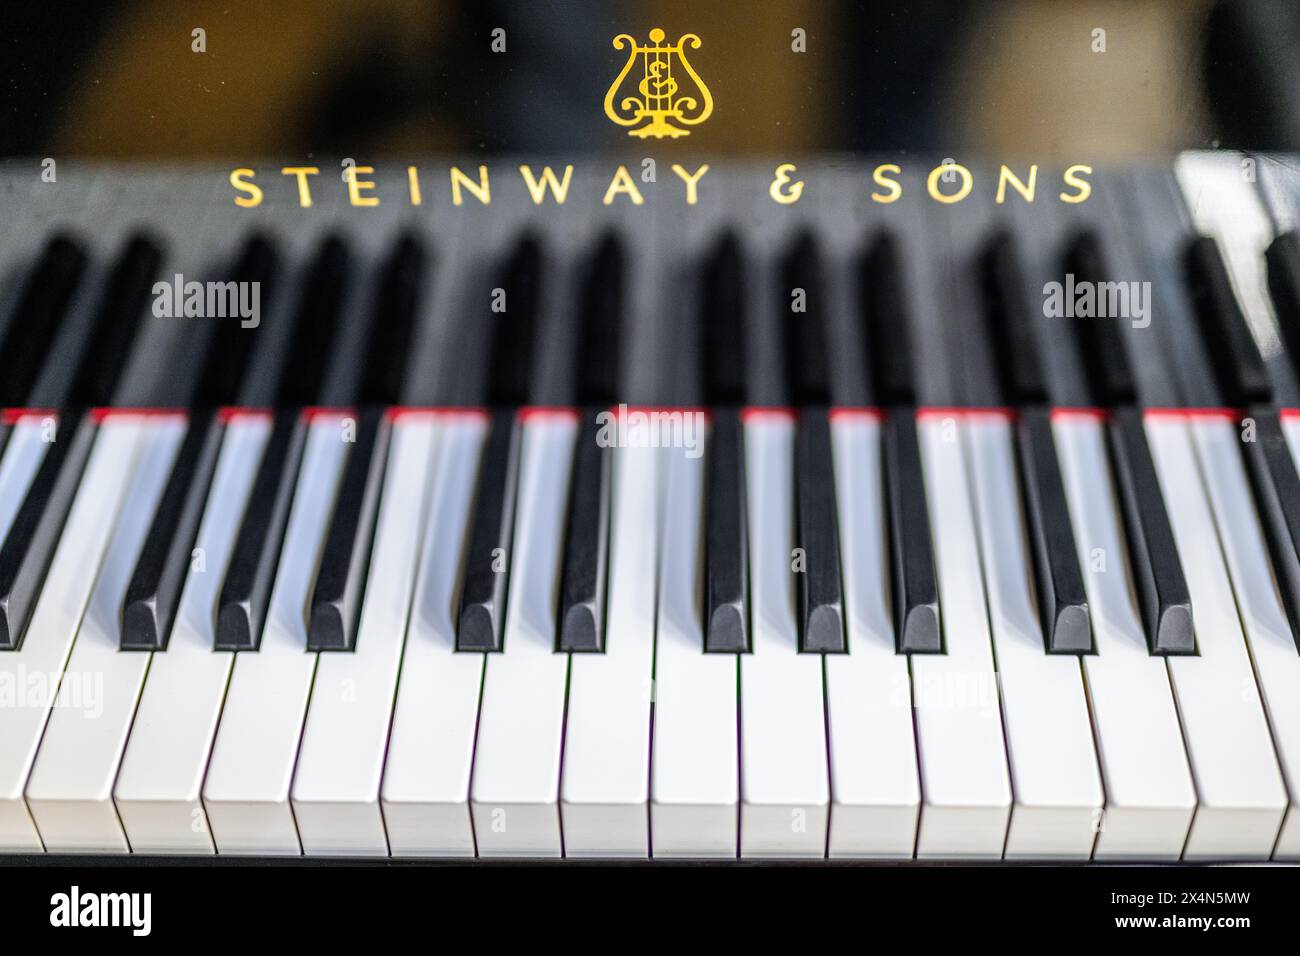 Touches noires et blanches d'un piano Steinway & sons avec une mise au point nette. Banque D'Images